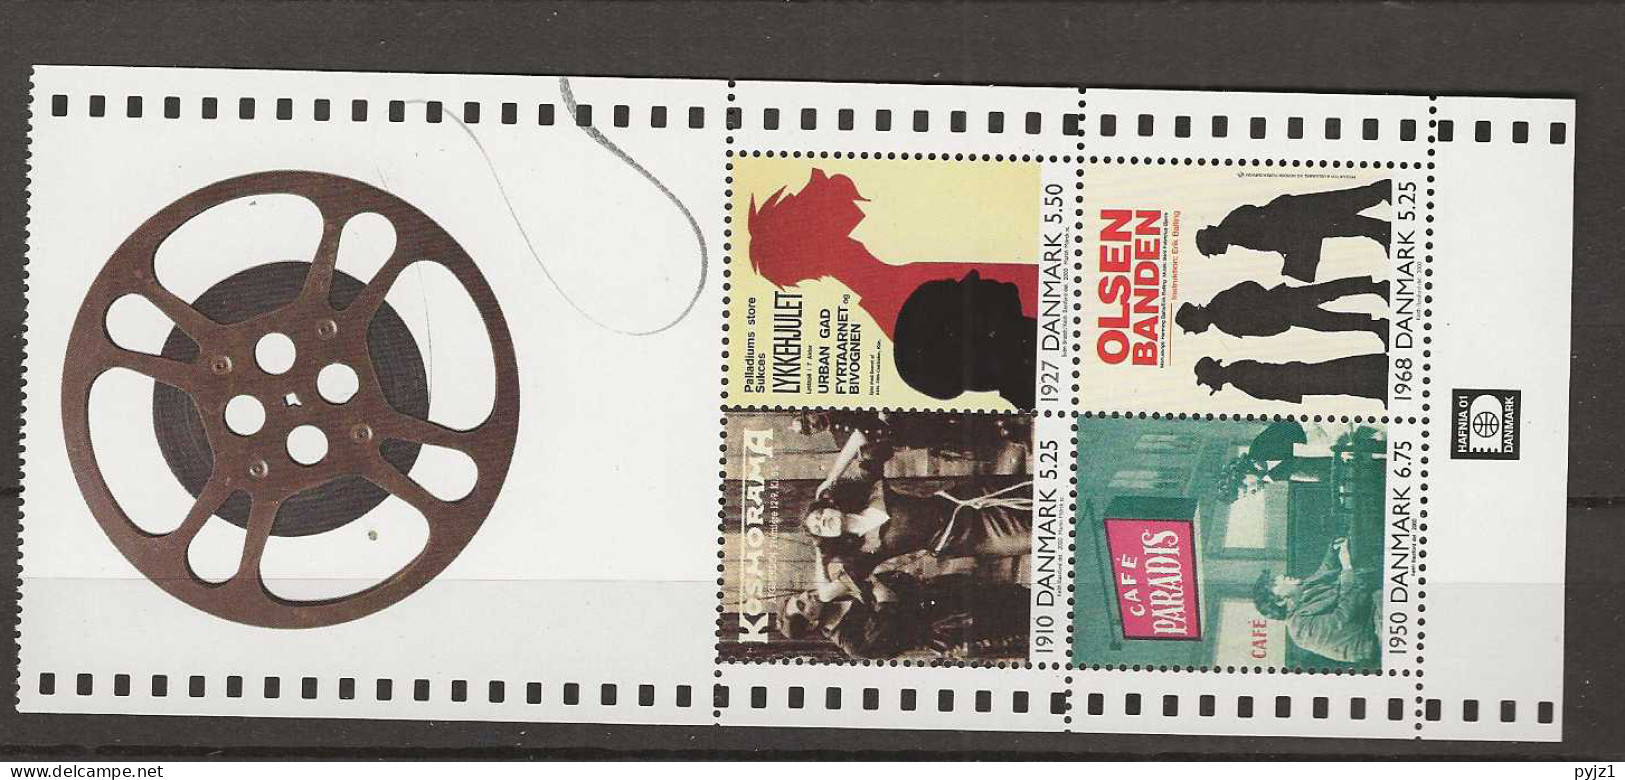 2000 MNH Denmark, Booklet Pane - Blocks & Sheetlets